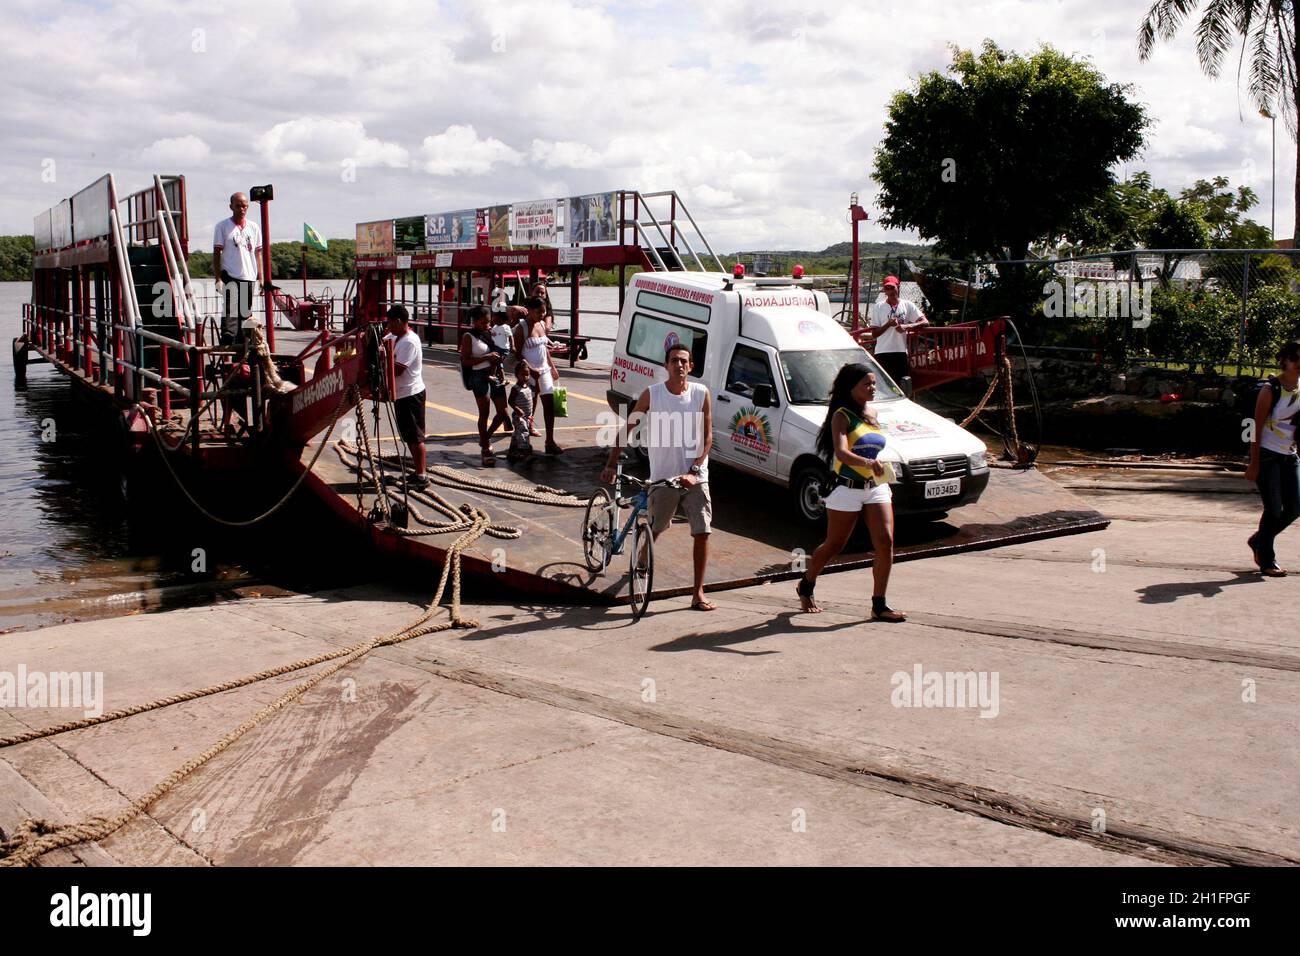 porto seguro, bahia / brasilien - 11. juni 2010: Fähre transportiert Fahrzeuge und Passagiere von Porto Seguro nach Arraial D'Ajuda. *** Ortsüberschrift *** Stockfoto